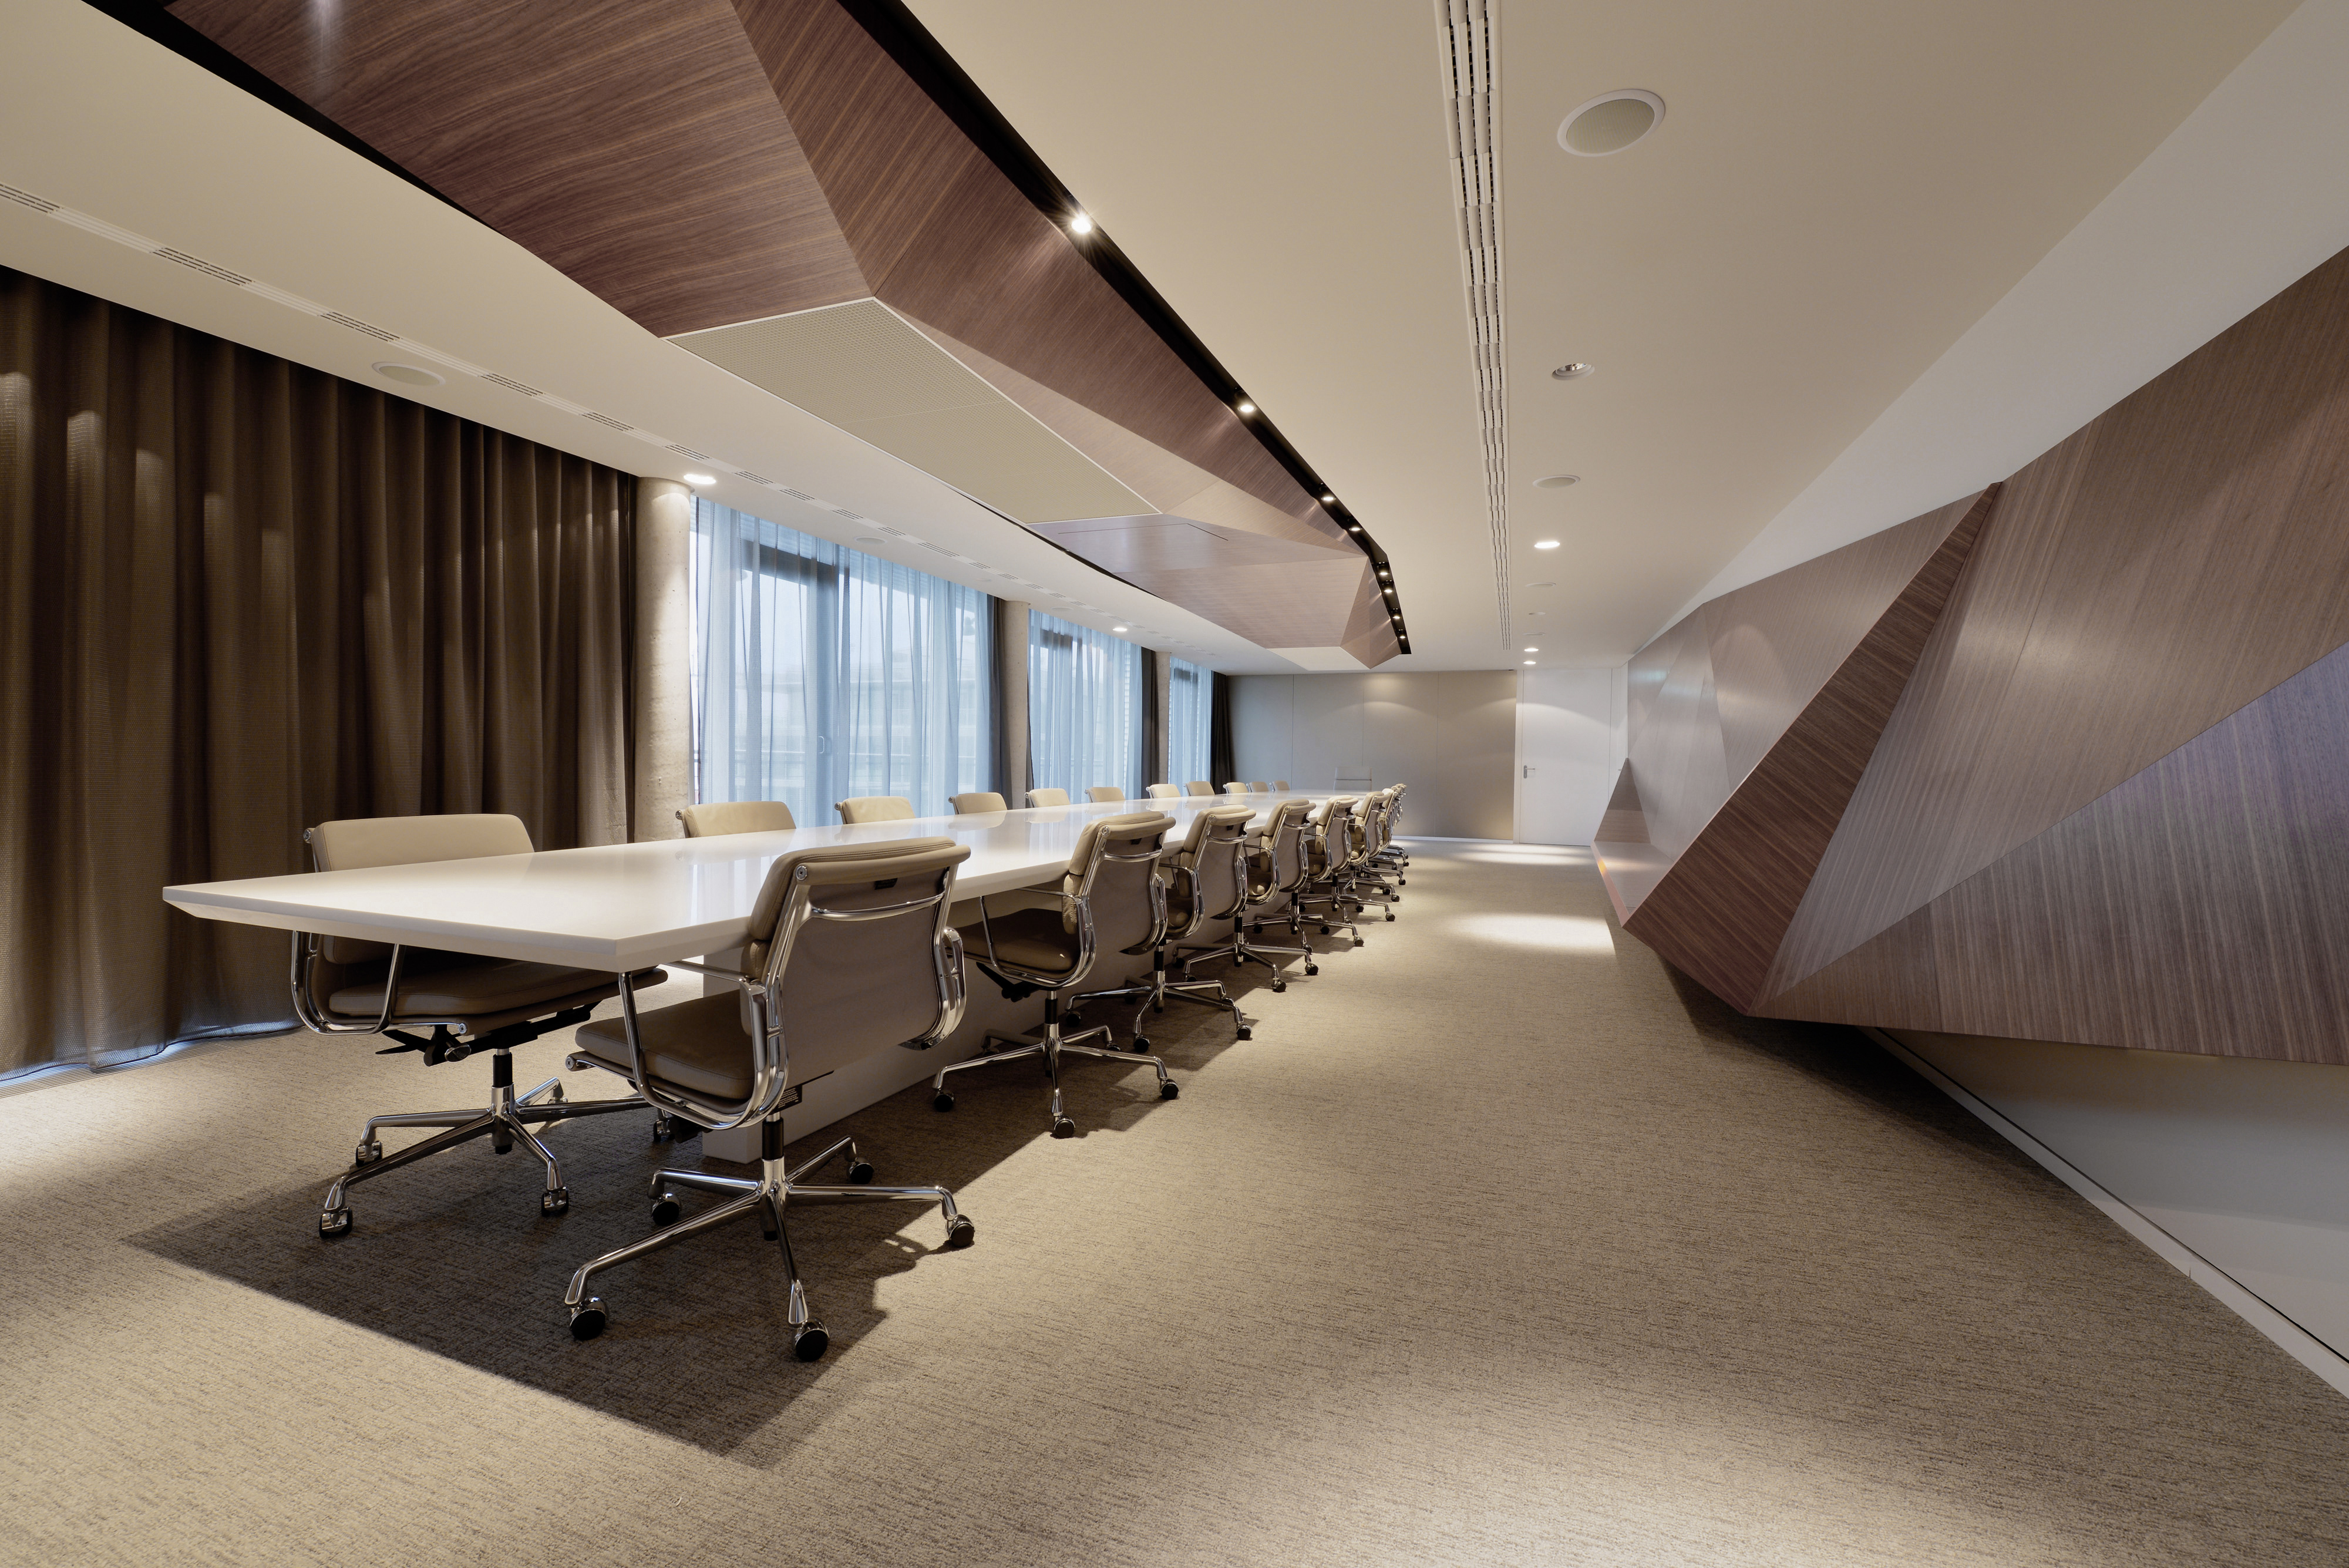 这个广阔的会议空间展示了多边形结构的大形式版本，在这里采用了天然木材色调。这些几何形状打破了办公室的标准直角形式，提供了独特而尖锐的工业创意元素。